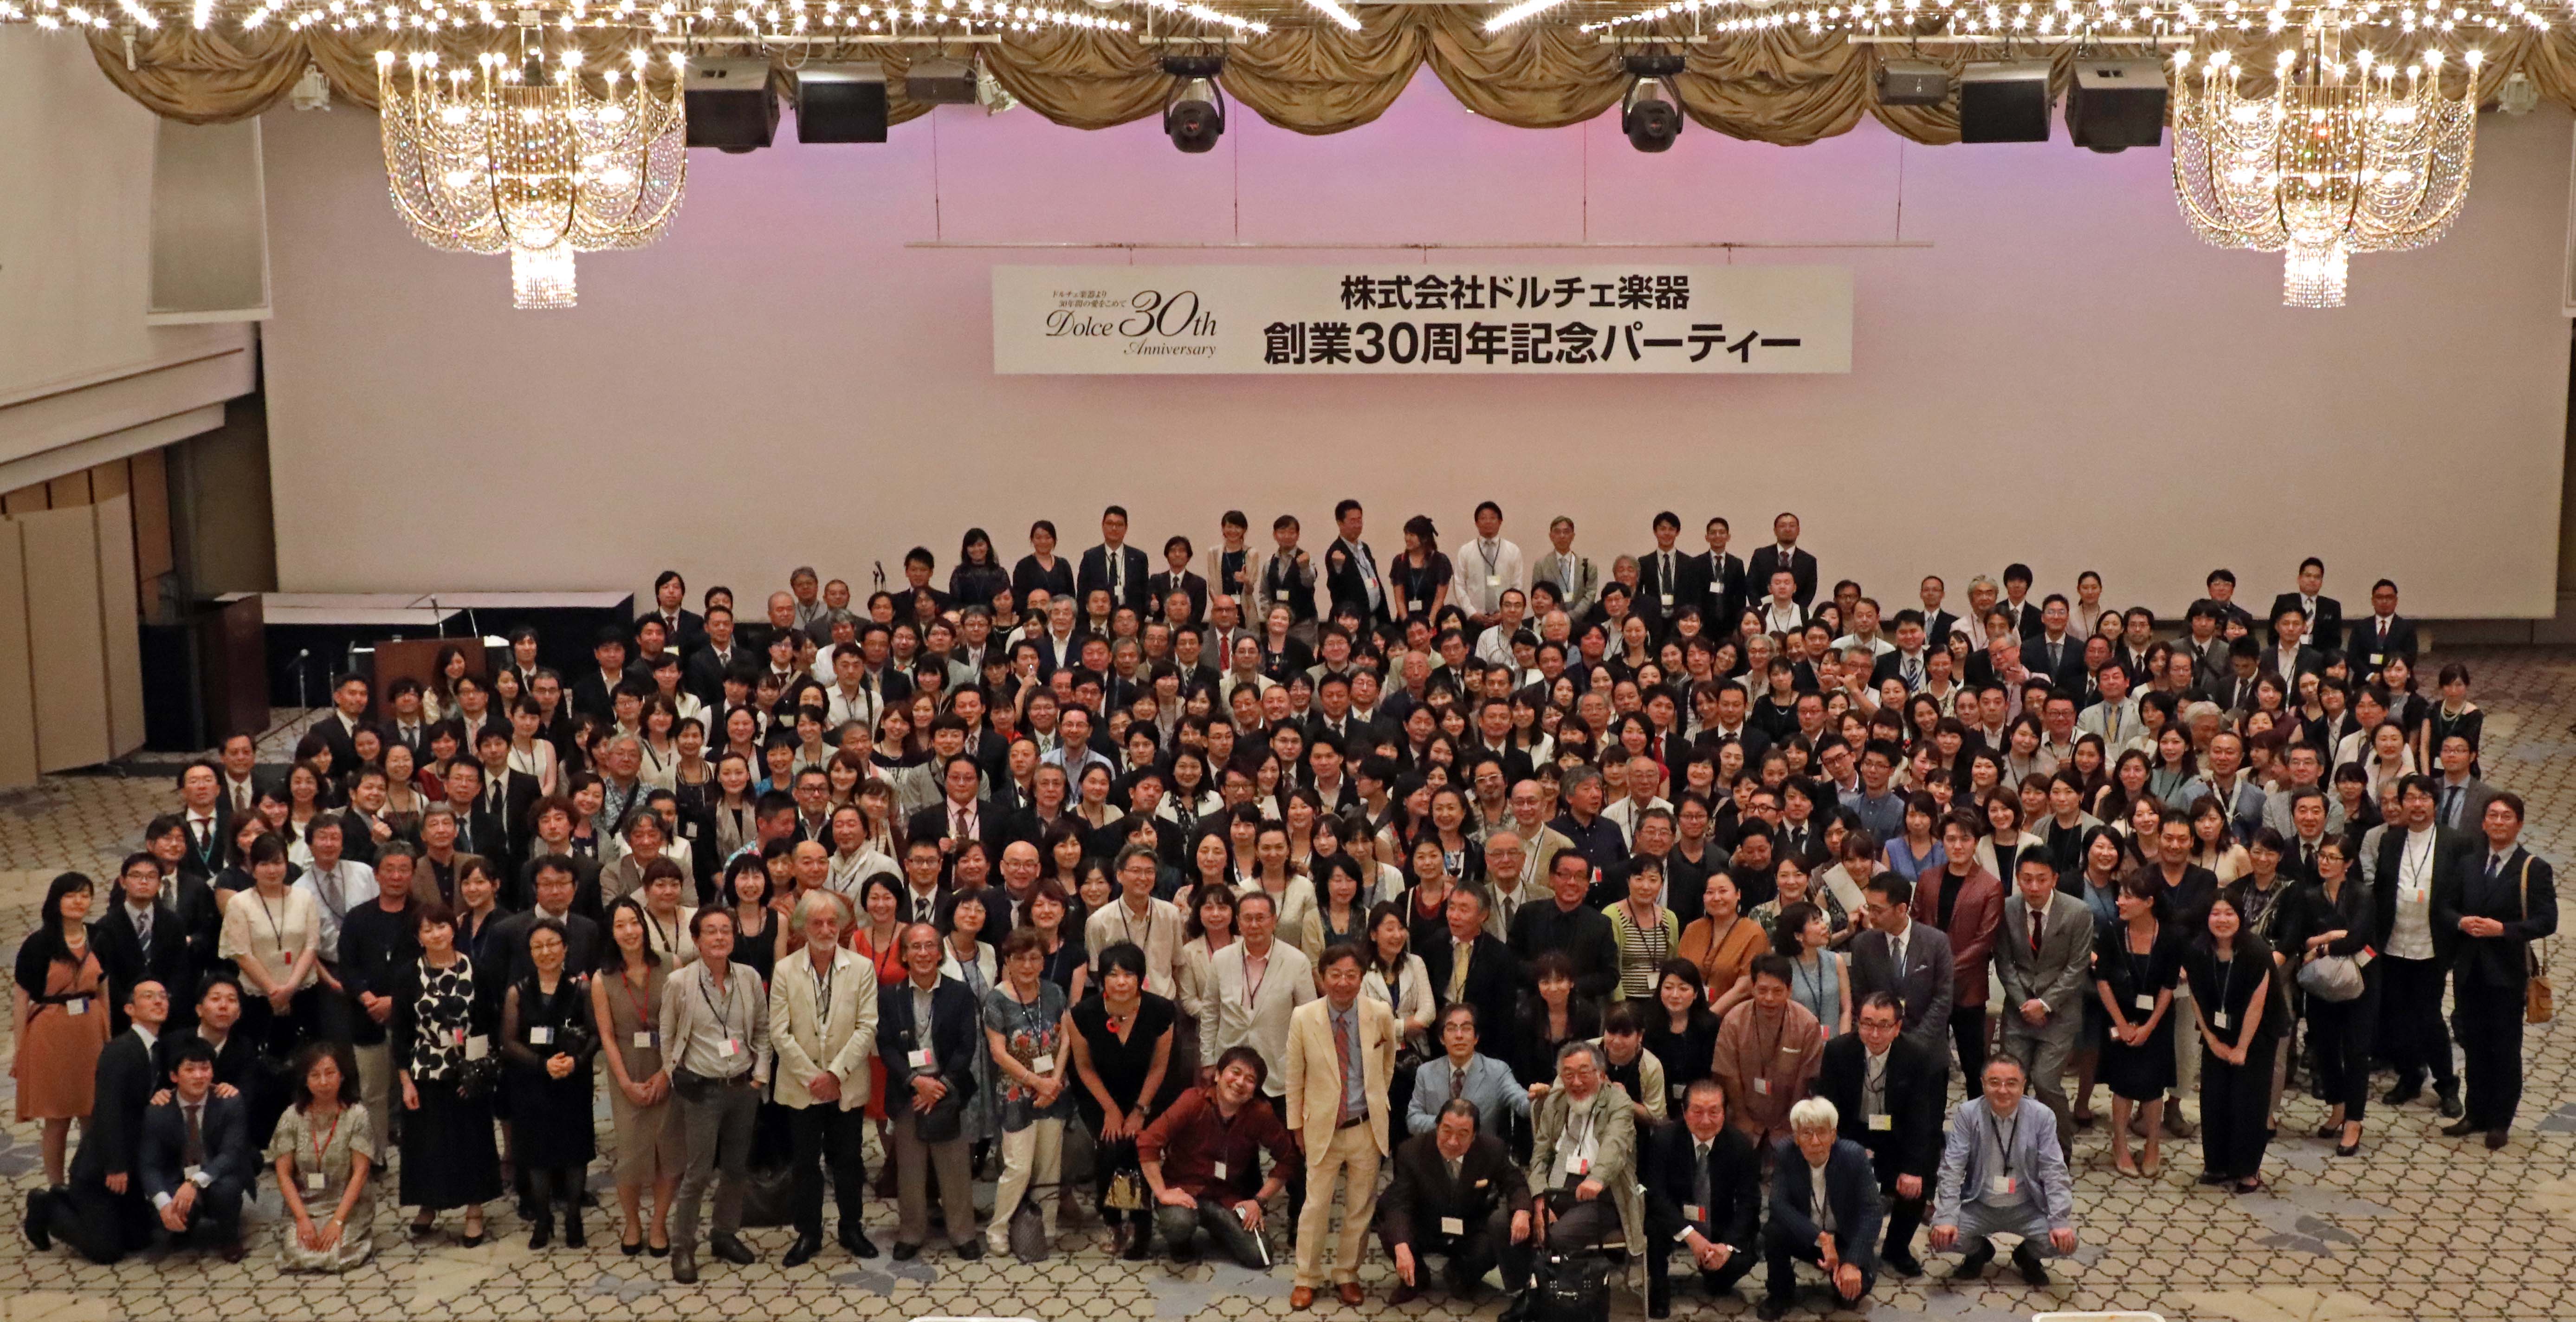 30ème Anniversaire Dolce Musical Instruments Co. à Tokyo